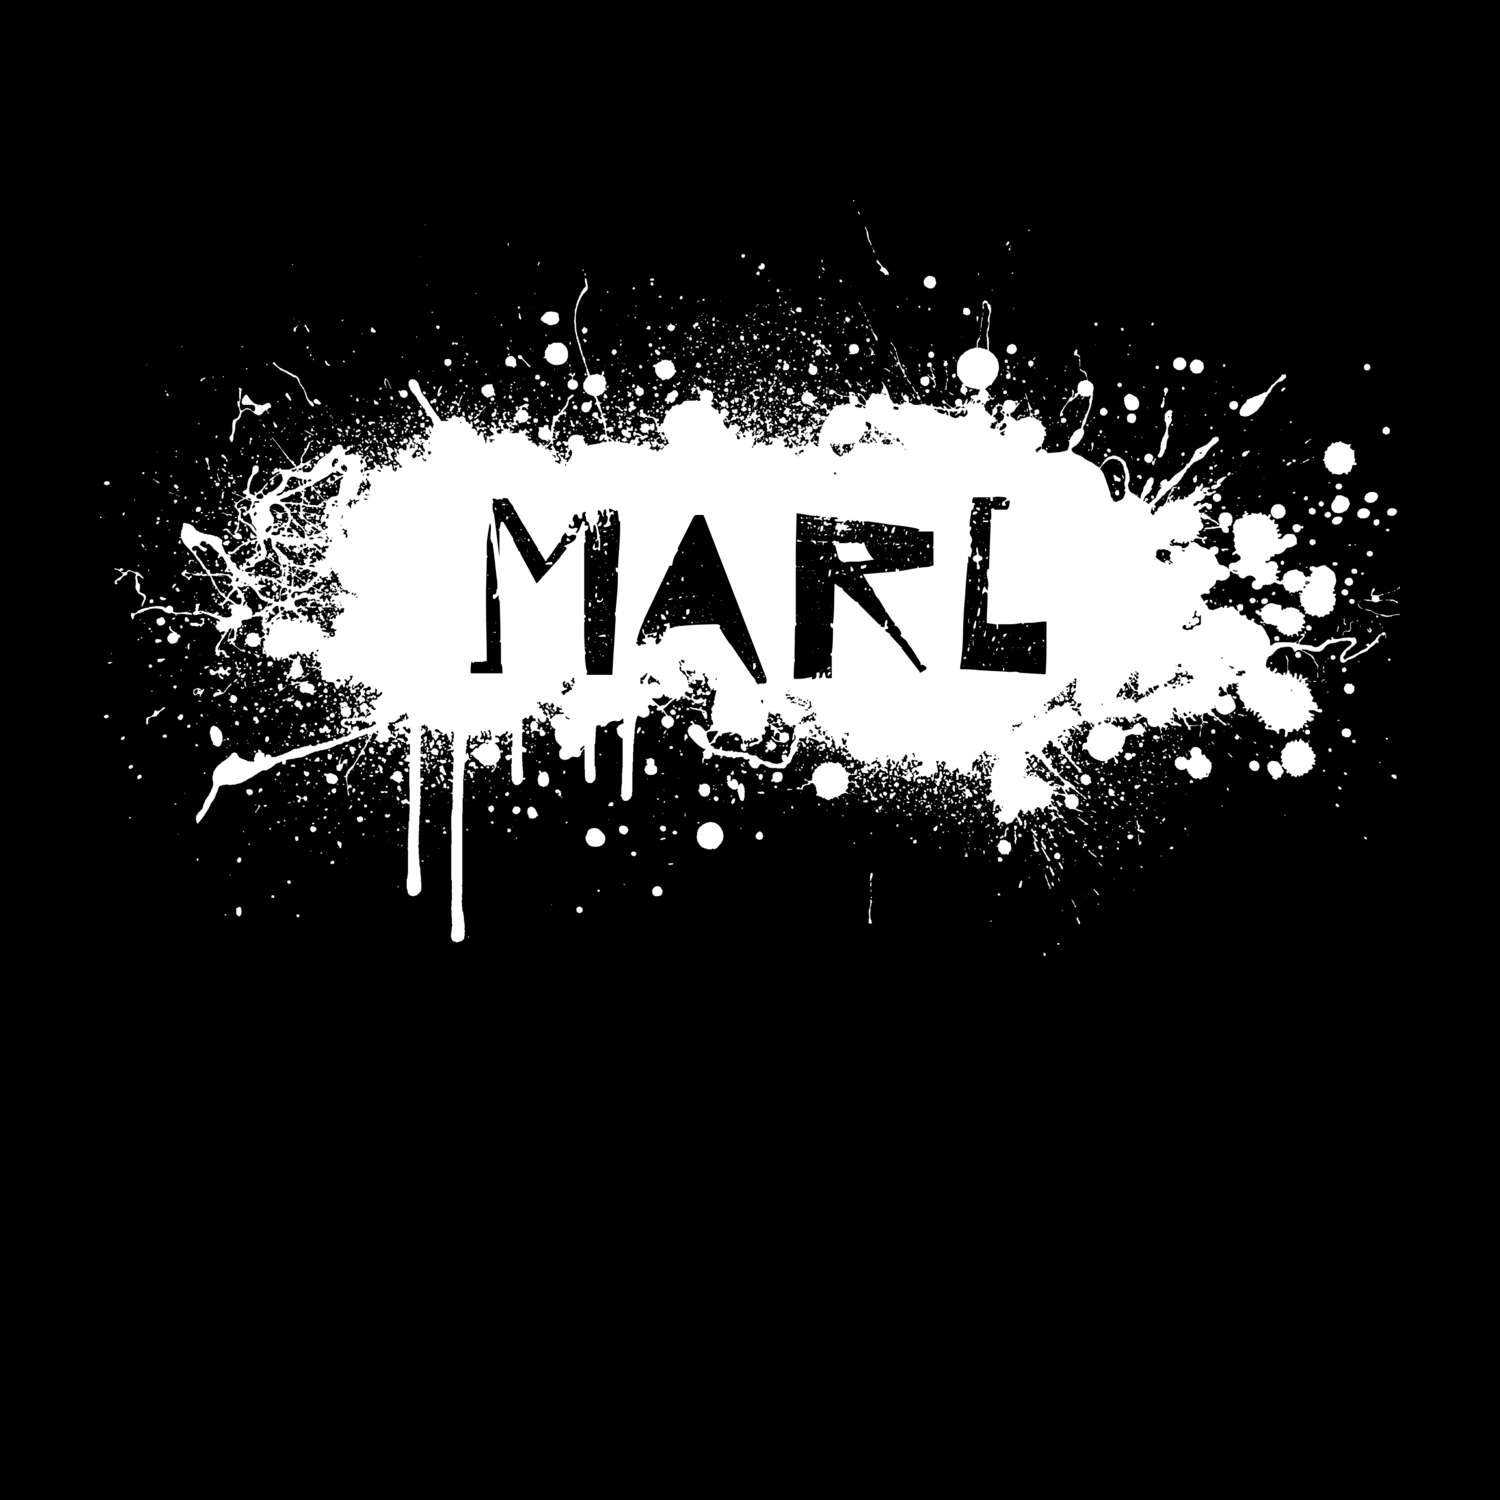 Marl T-Shirt »Paint Splash Punk«